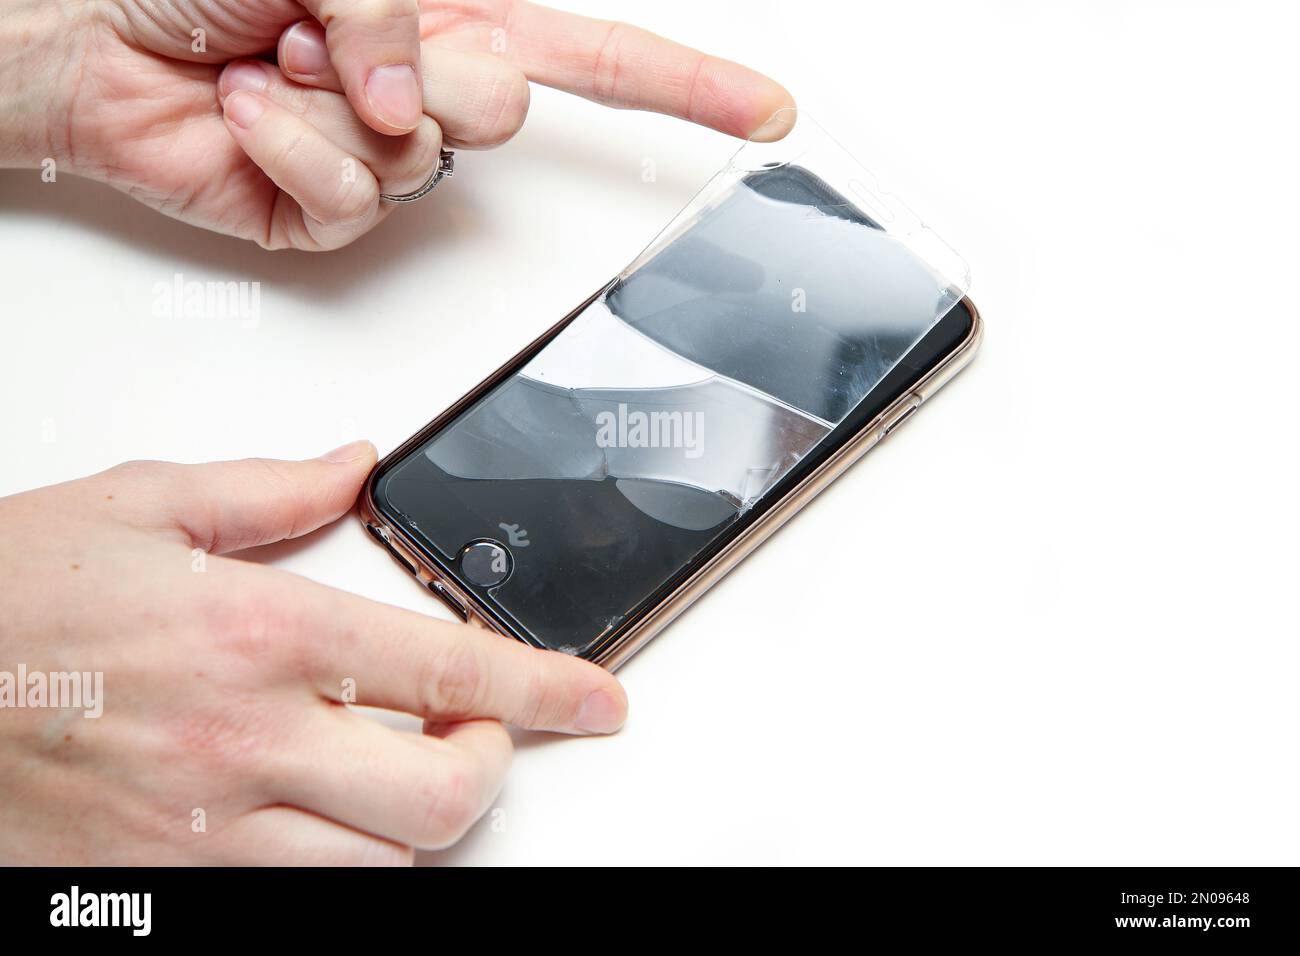 Il dettaglio delle mani che rimuovono il vetro di protezione rotto con incrinature dallo schermo a sfioramento dello smartphone. Foto Stock